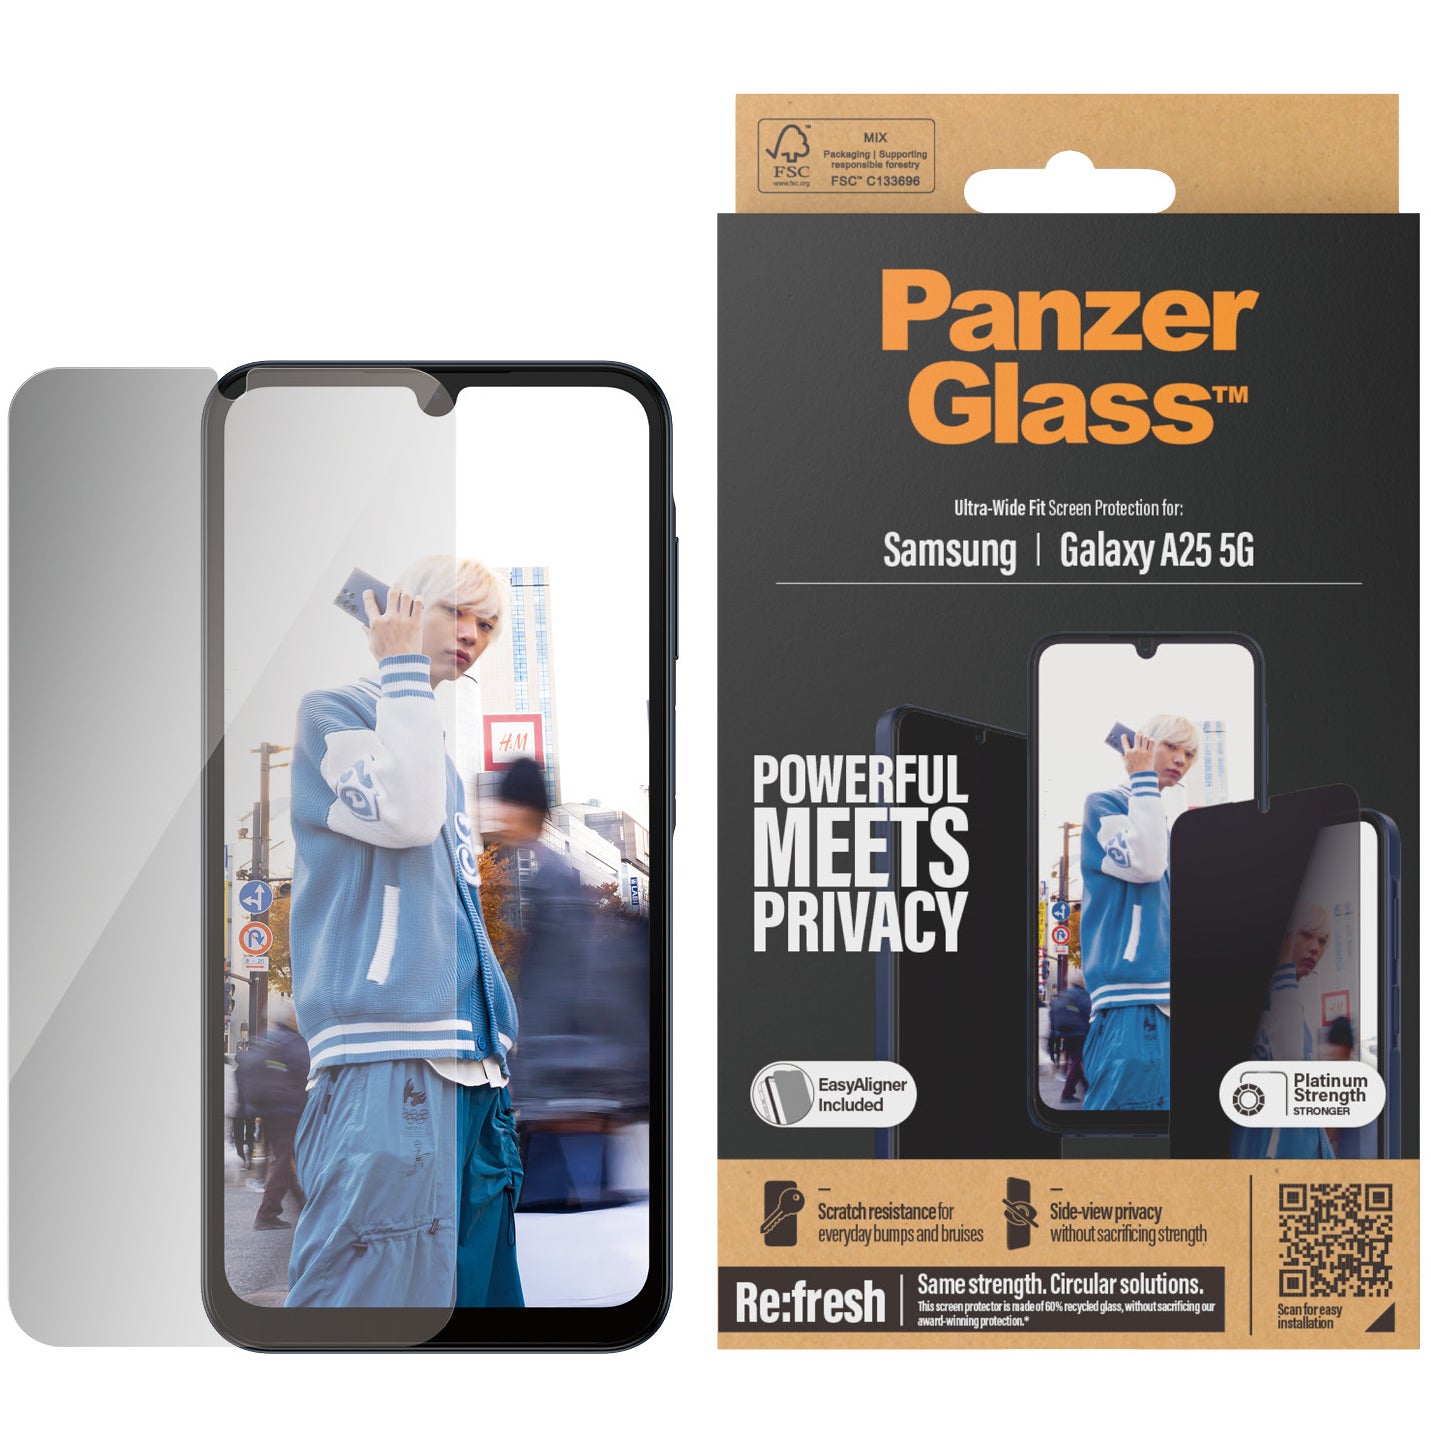 Gehärtetes Glas für Galaxy A25 5G für das gesamte Display PanzerGlass Ultra-Wide Fit Privacy + EasyAligner, Getönte